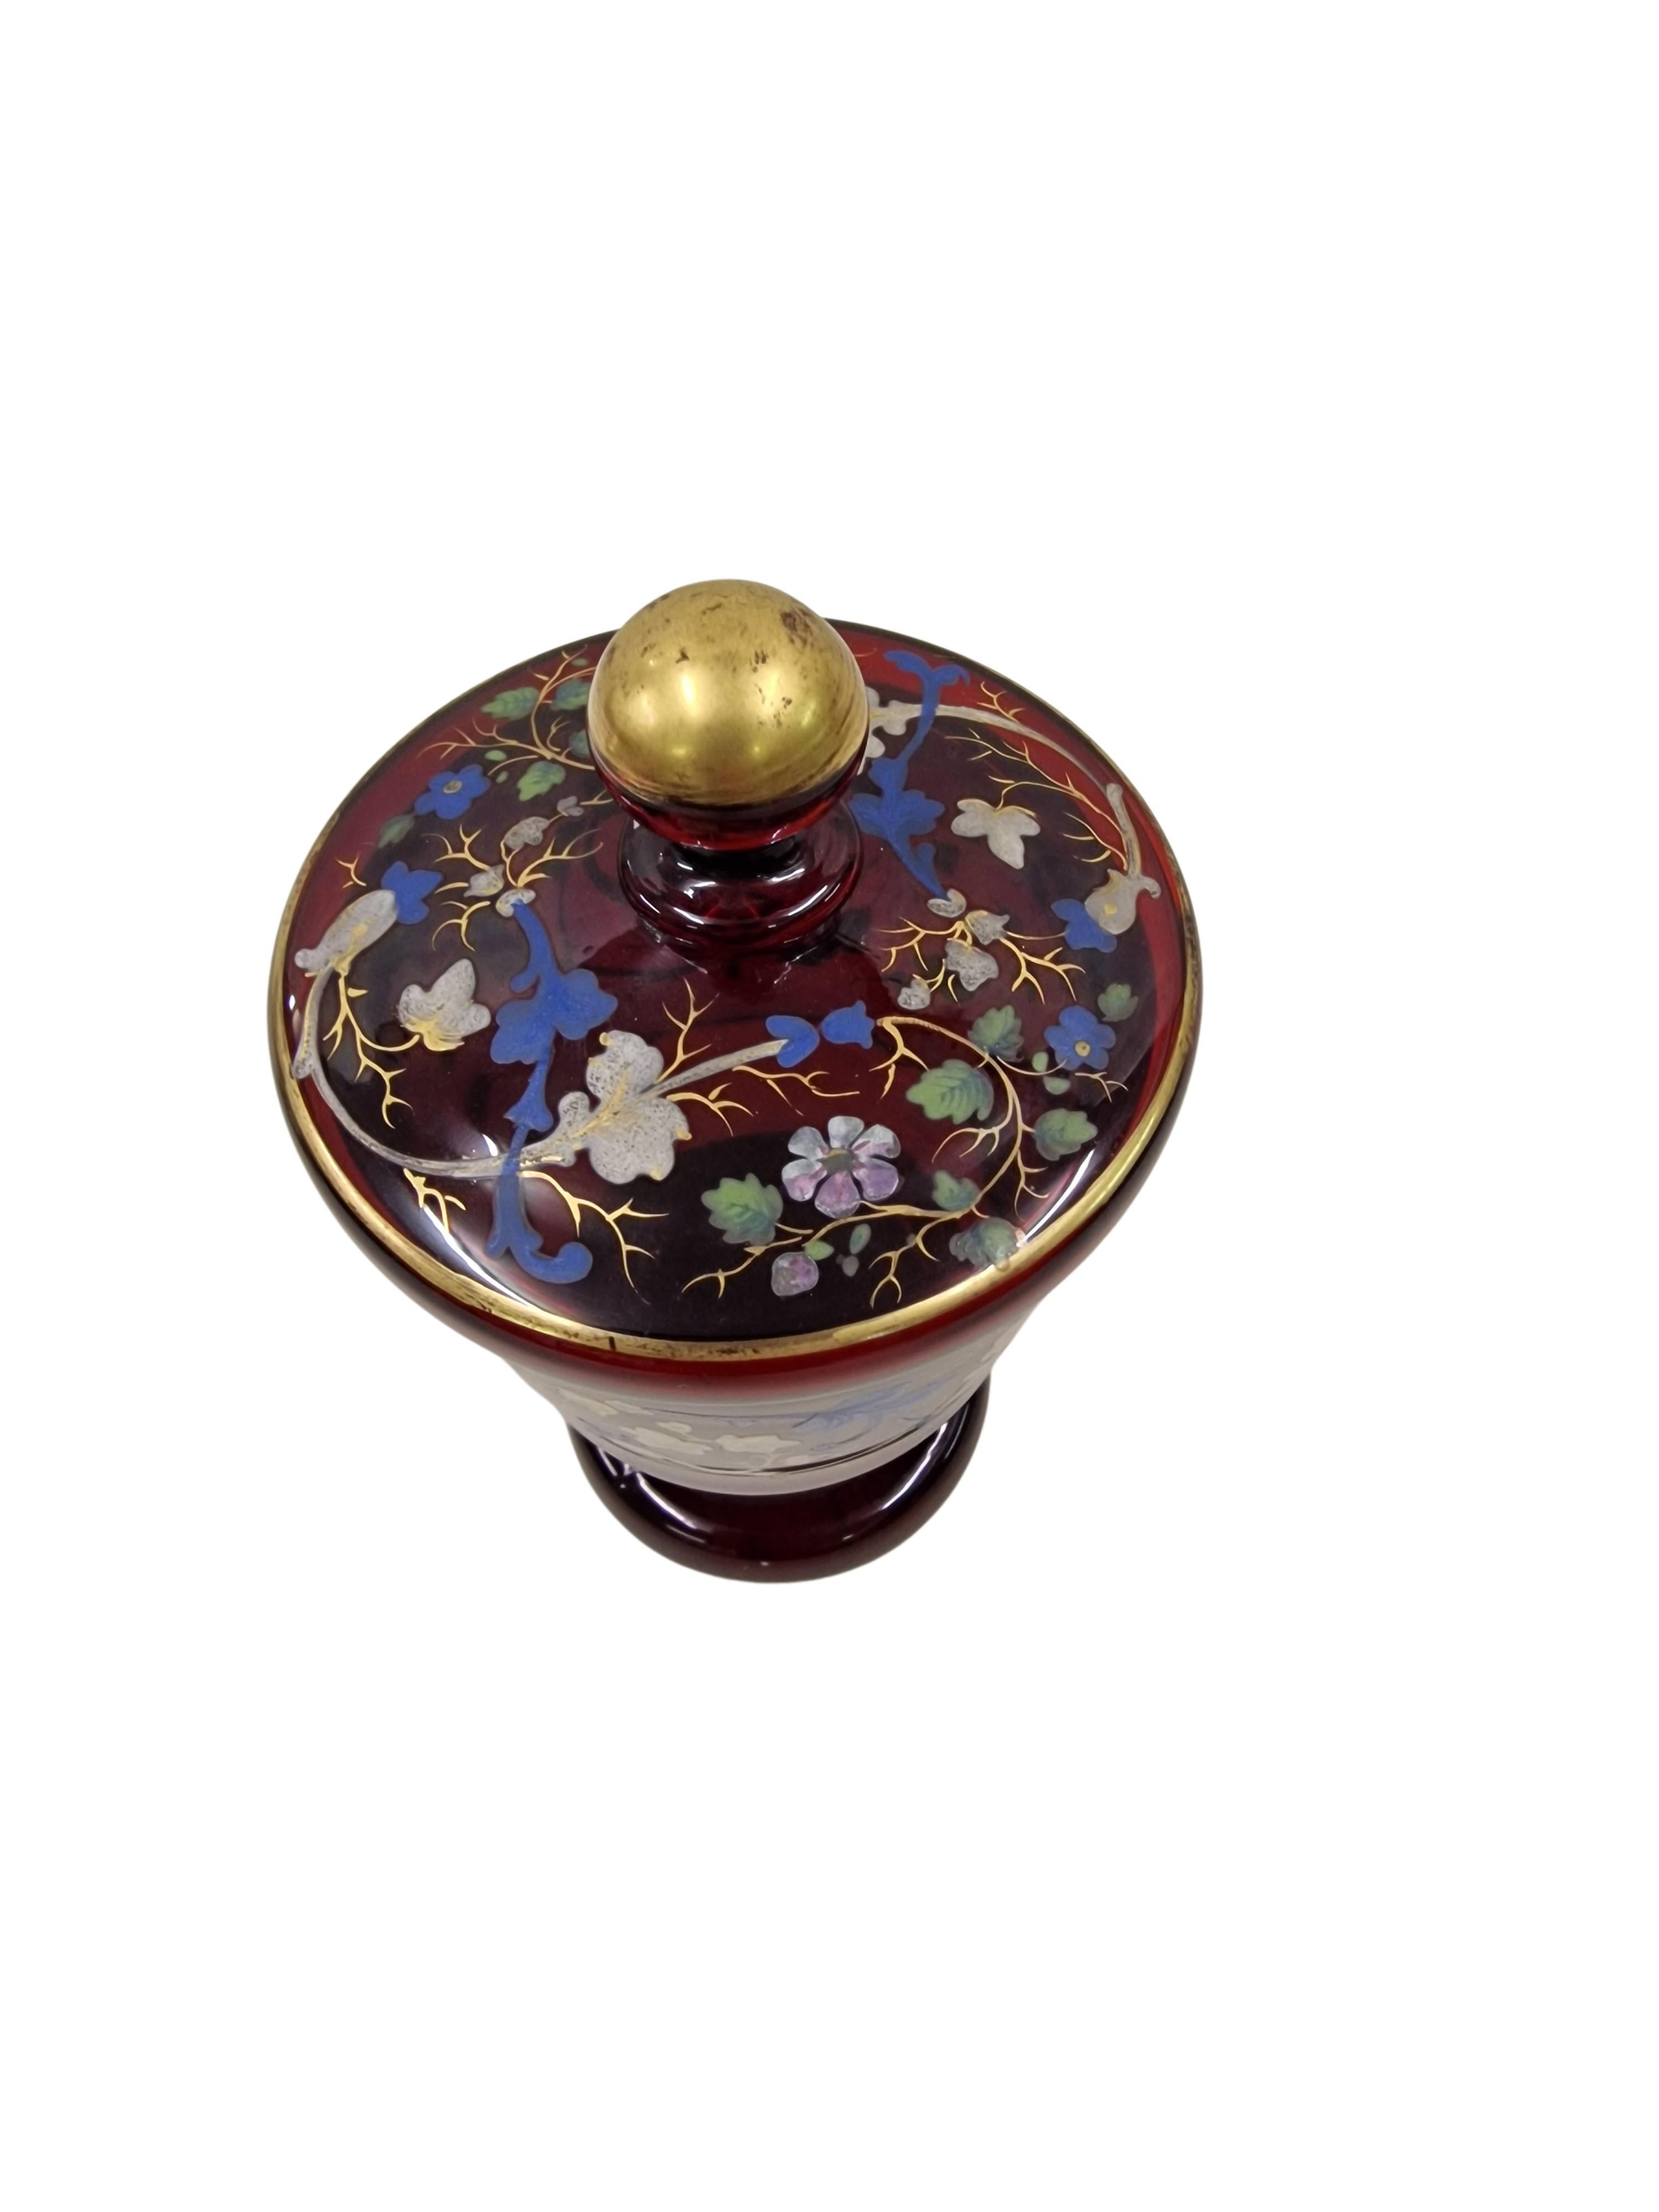 Wunderschöner Pokal mit Deckel, hergestellt um 1850 in der späten Biedermeierzeit in Mitteleuropa, in Österreich. Dieses wunderbare Objekt ist aus rubinrotem Glas, das im Licht eine schöne Färbung aufweist. Der Kelch ist mit handgemalten,